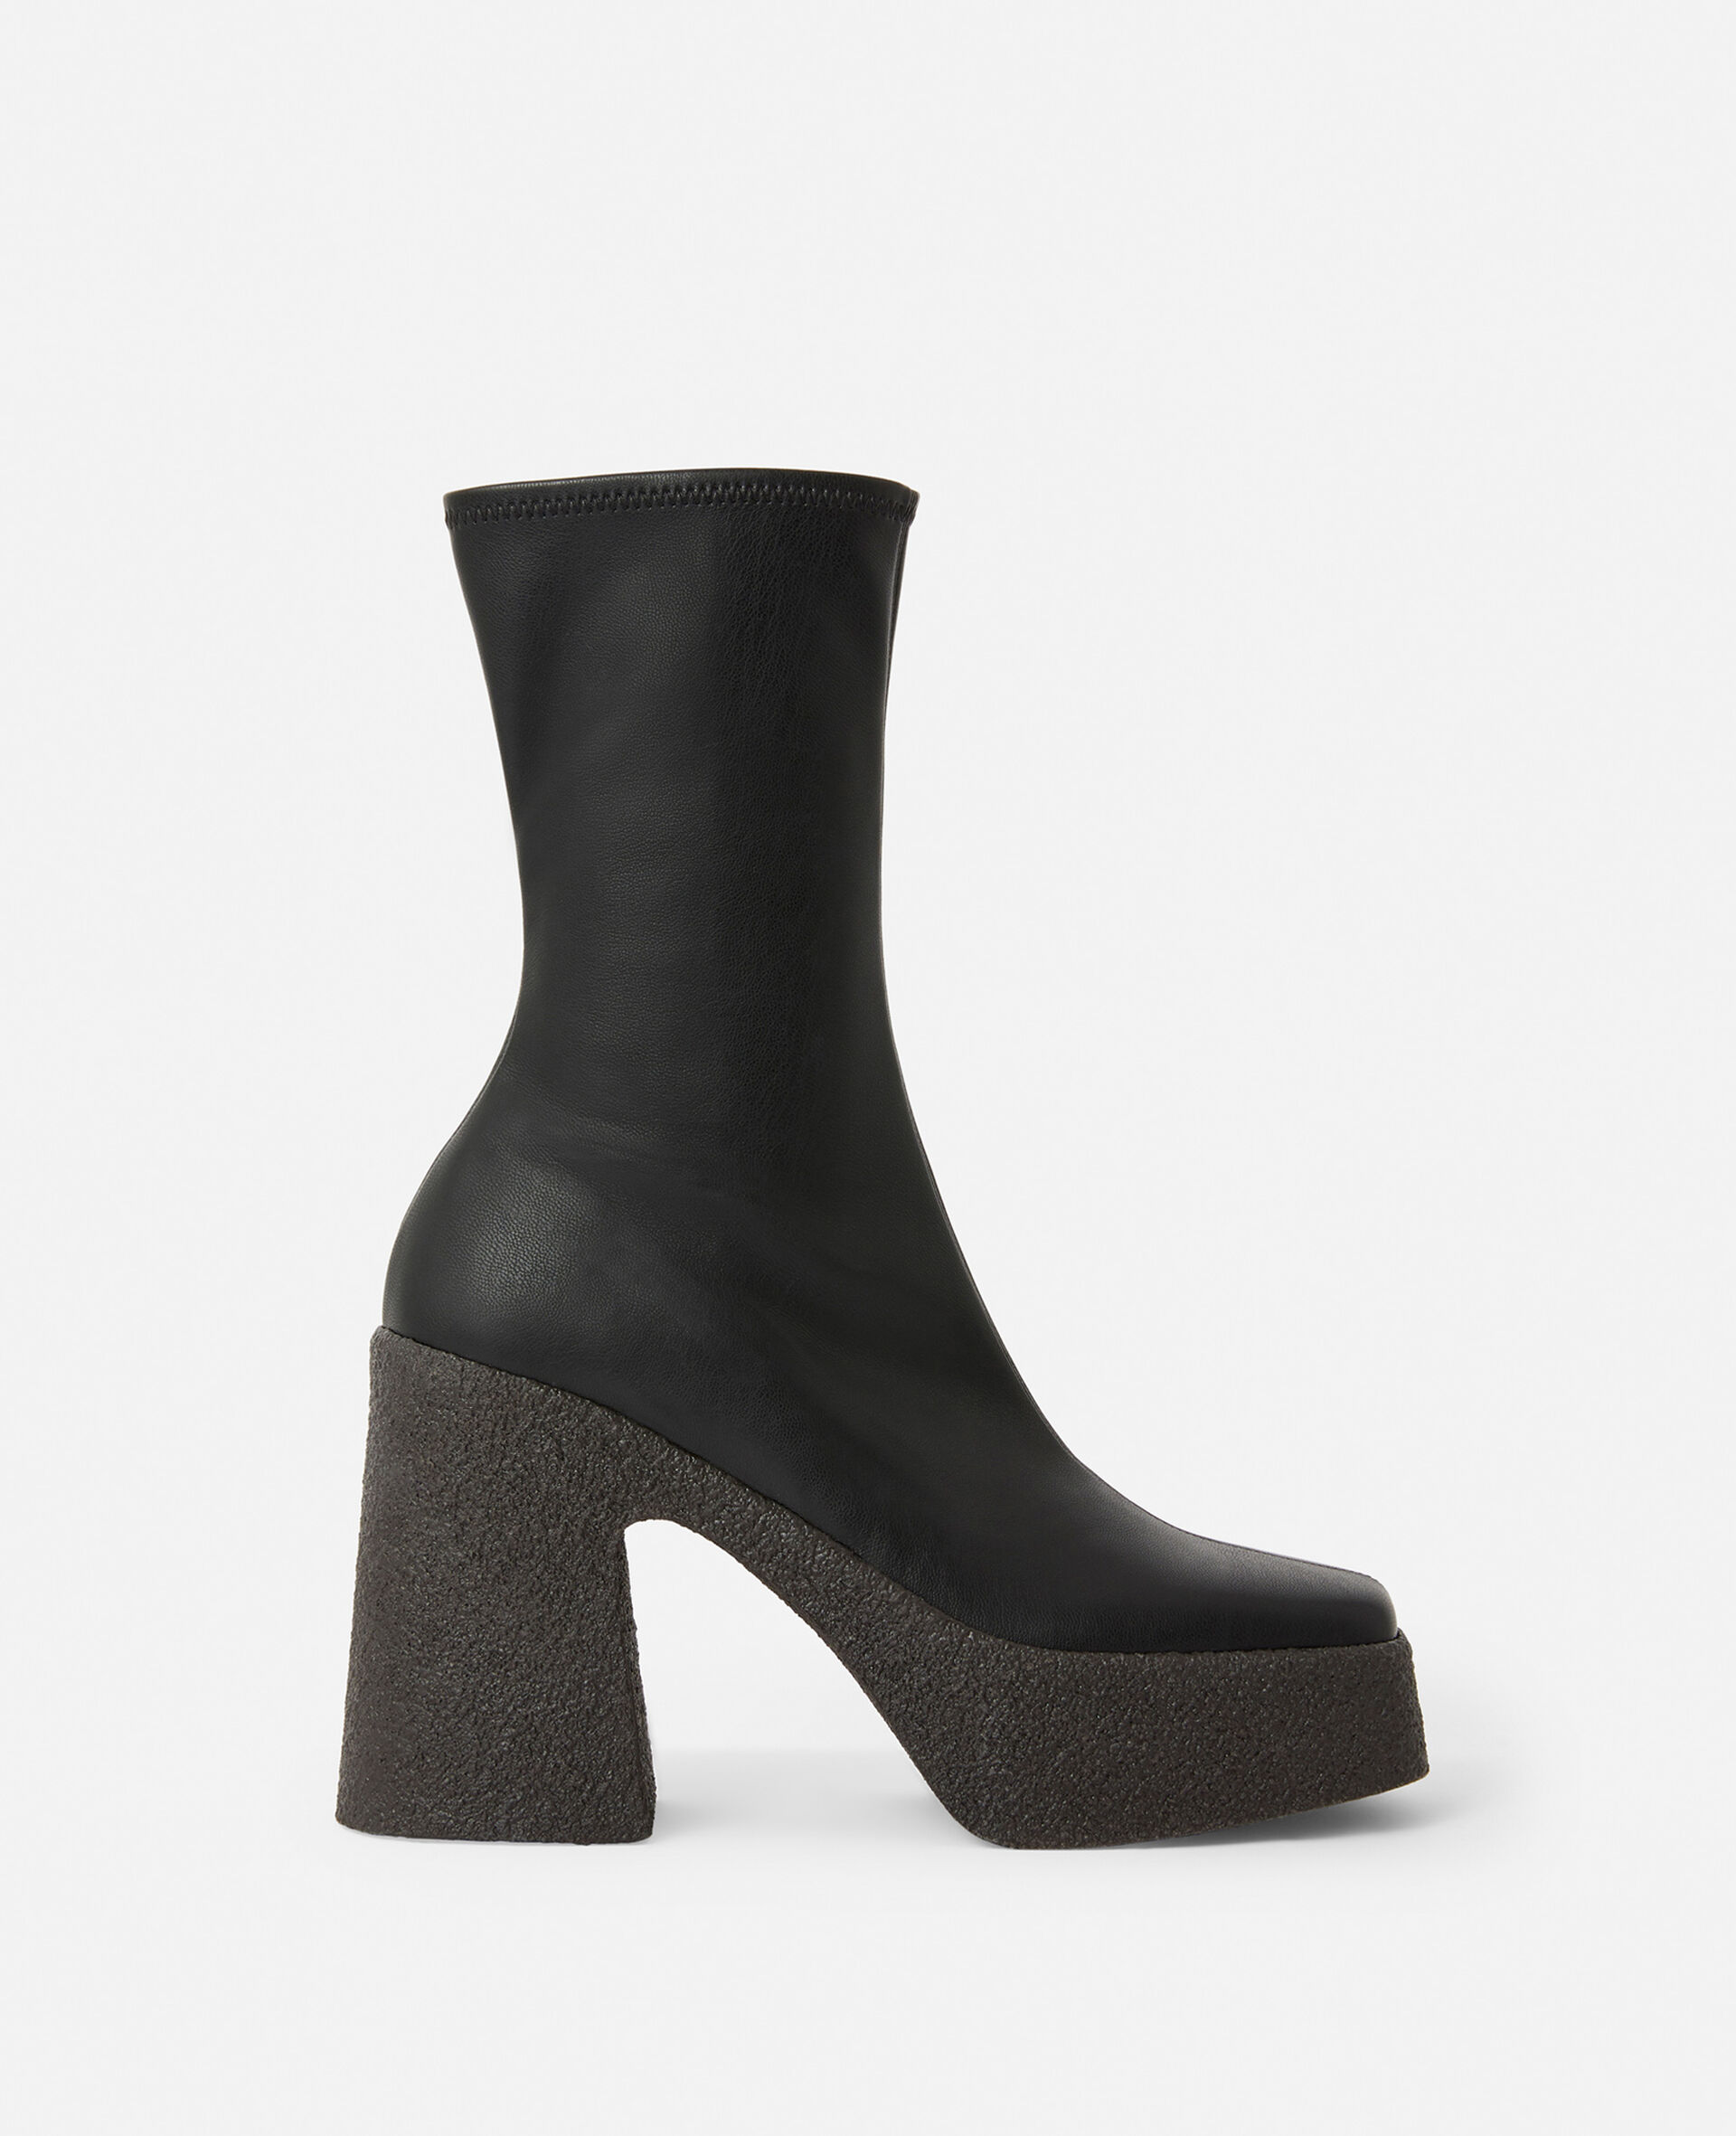 Skyla Chunky Platform Ankle Boots-Black-large image number 0